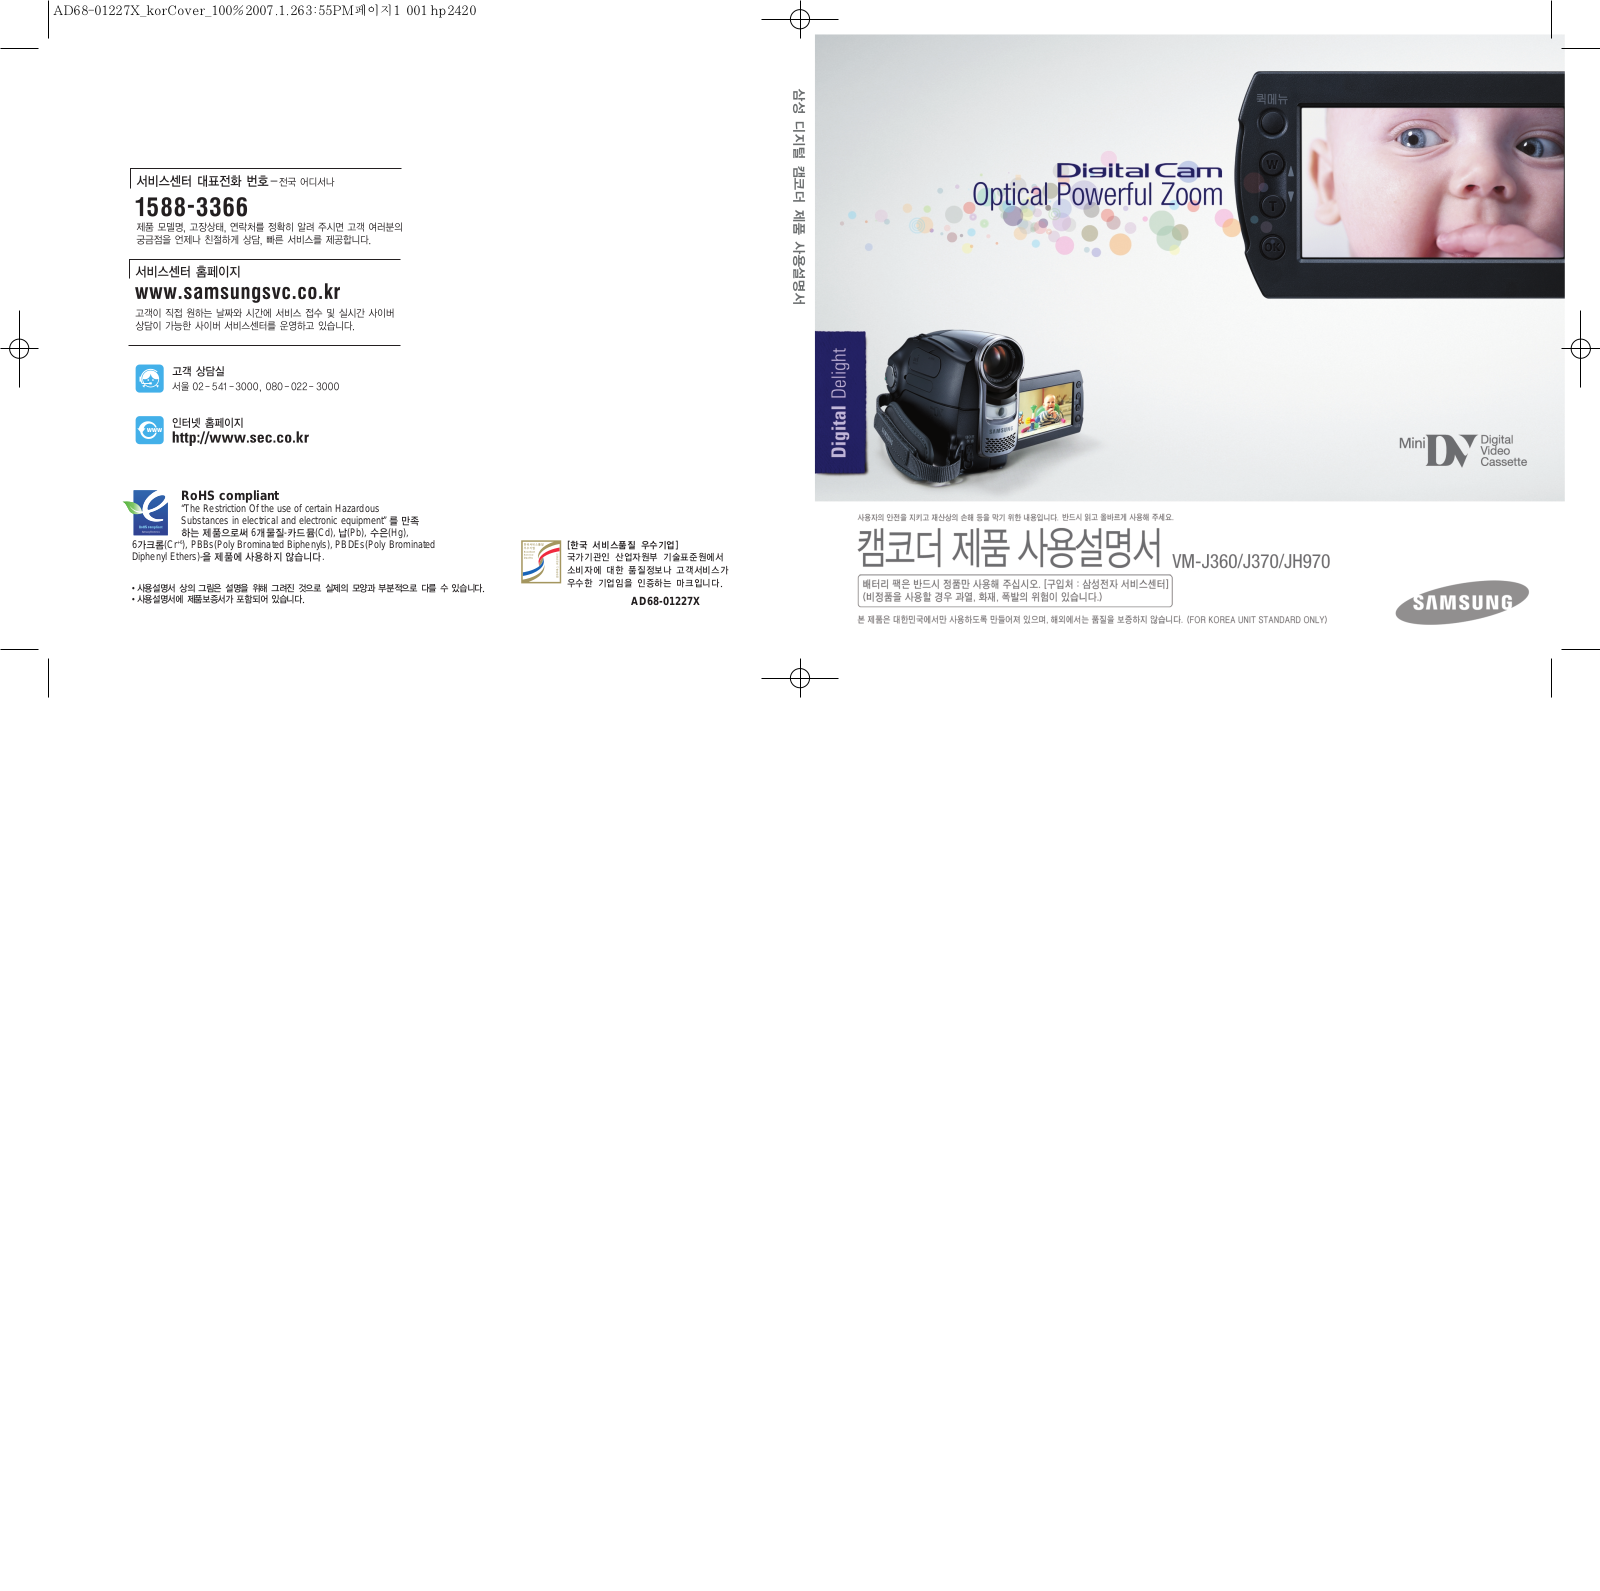 Samsung VM-J370G, VM-J360, VM-JH970, VM-J370 Manual